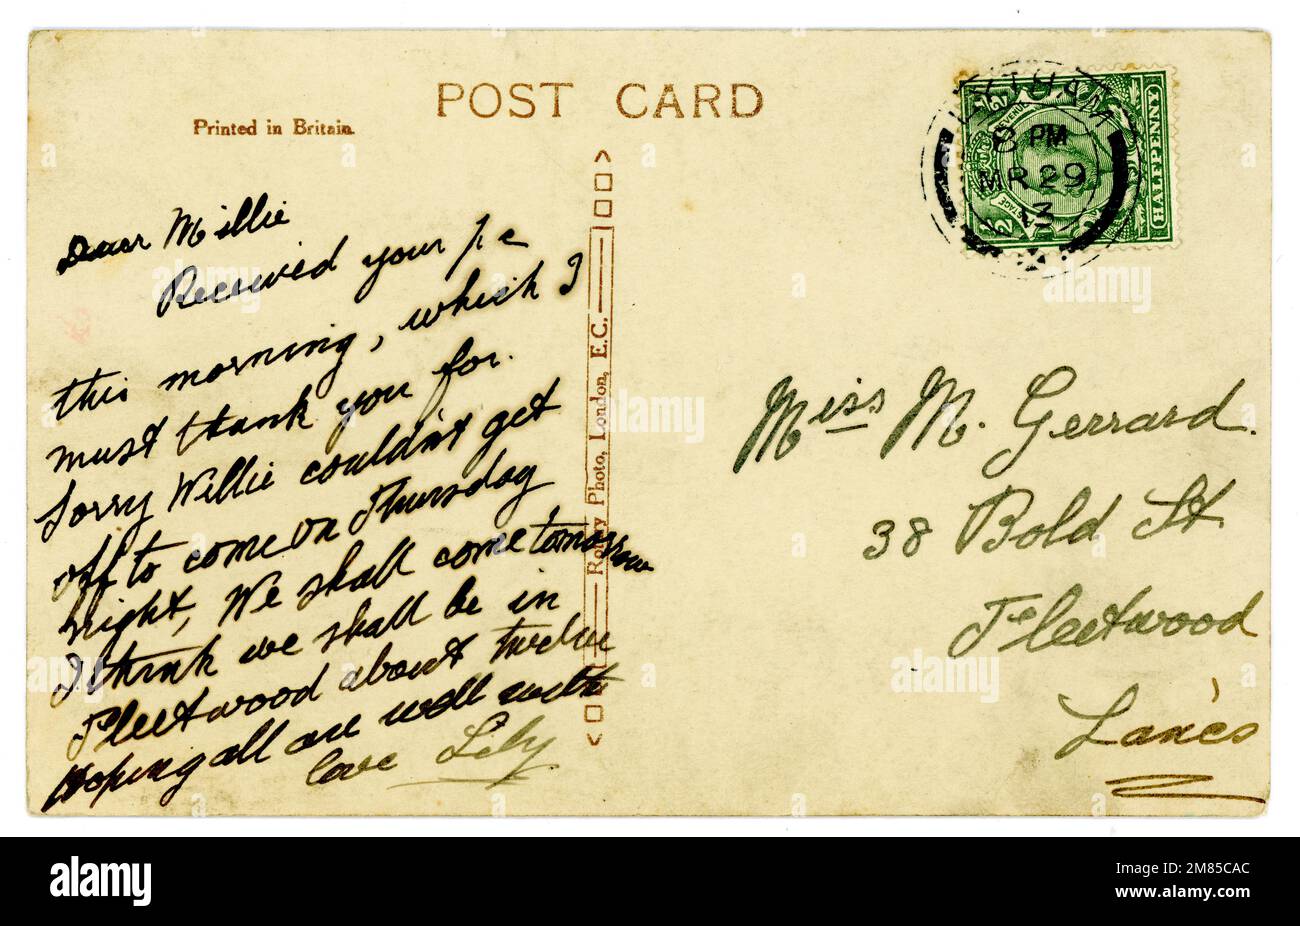 Revers de la carte postale manuscrite originale de l'ère Titanic, affranchie et avec le timbre-poste demi-penny du roi George V. Cachet de la poste / daté mars 1913. Banque D'Images